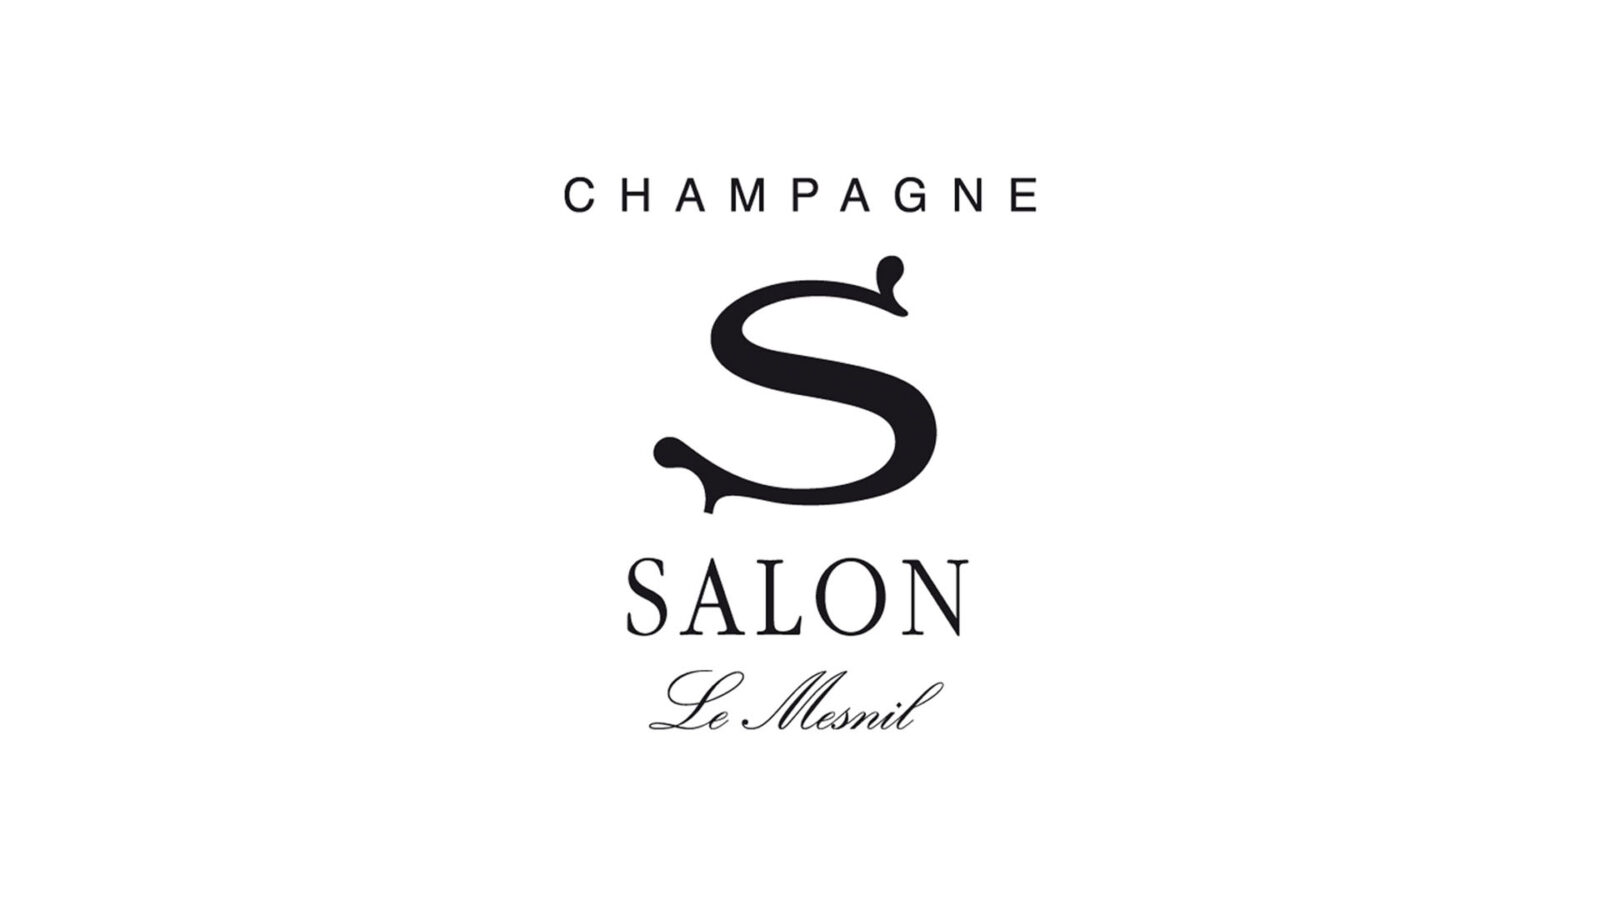 Champagne Salon